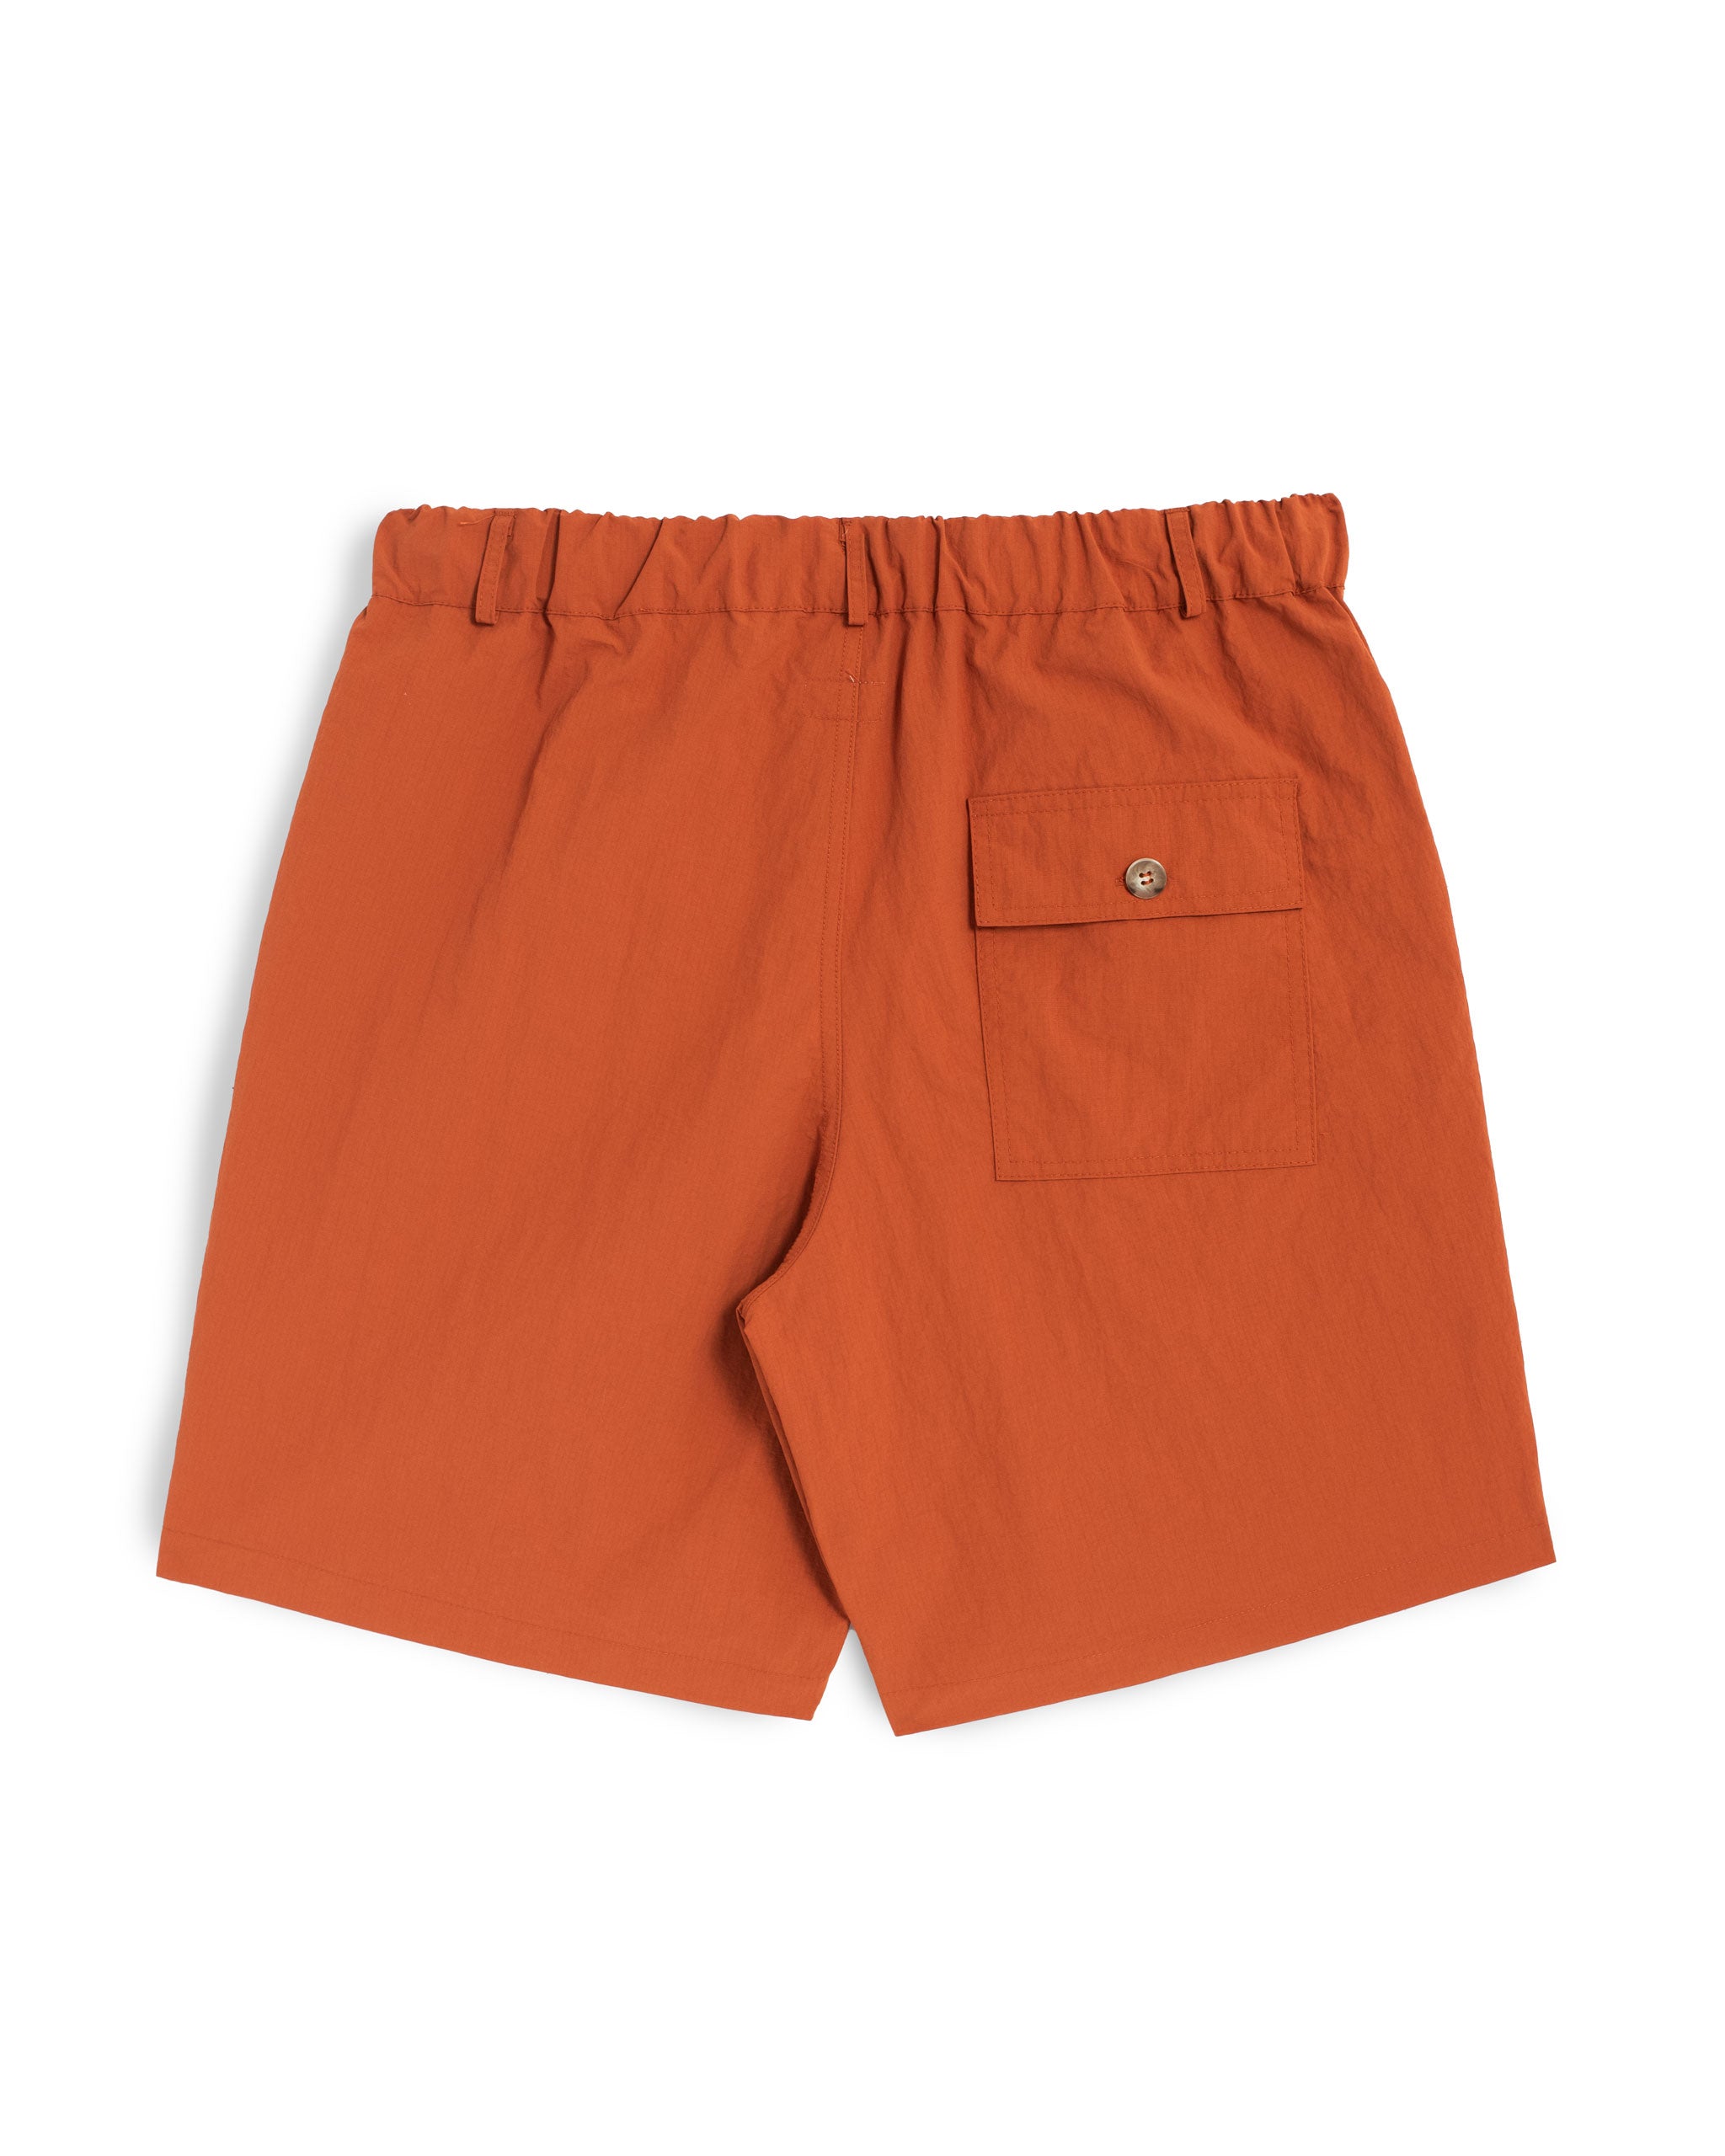 Back shot of Solid Orange nylon utility shorts with pocket on right side